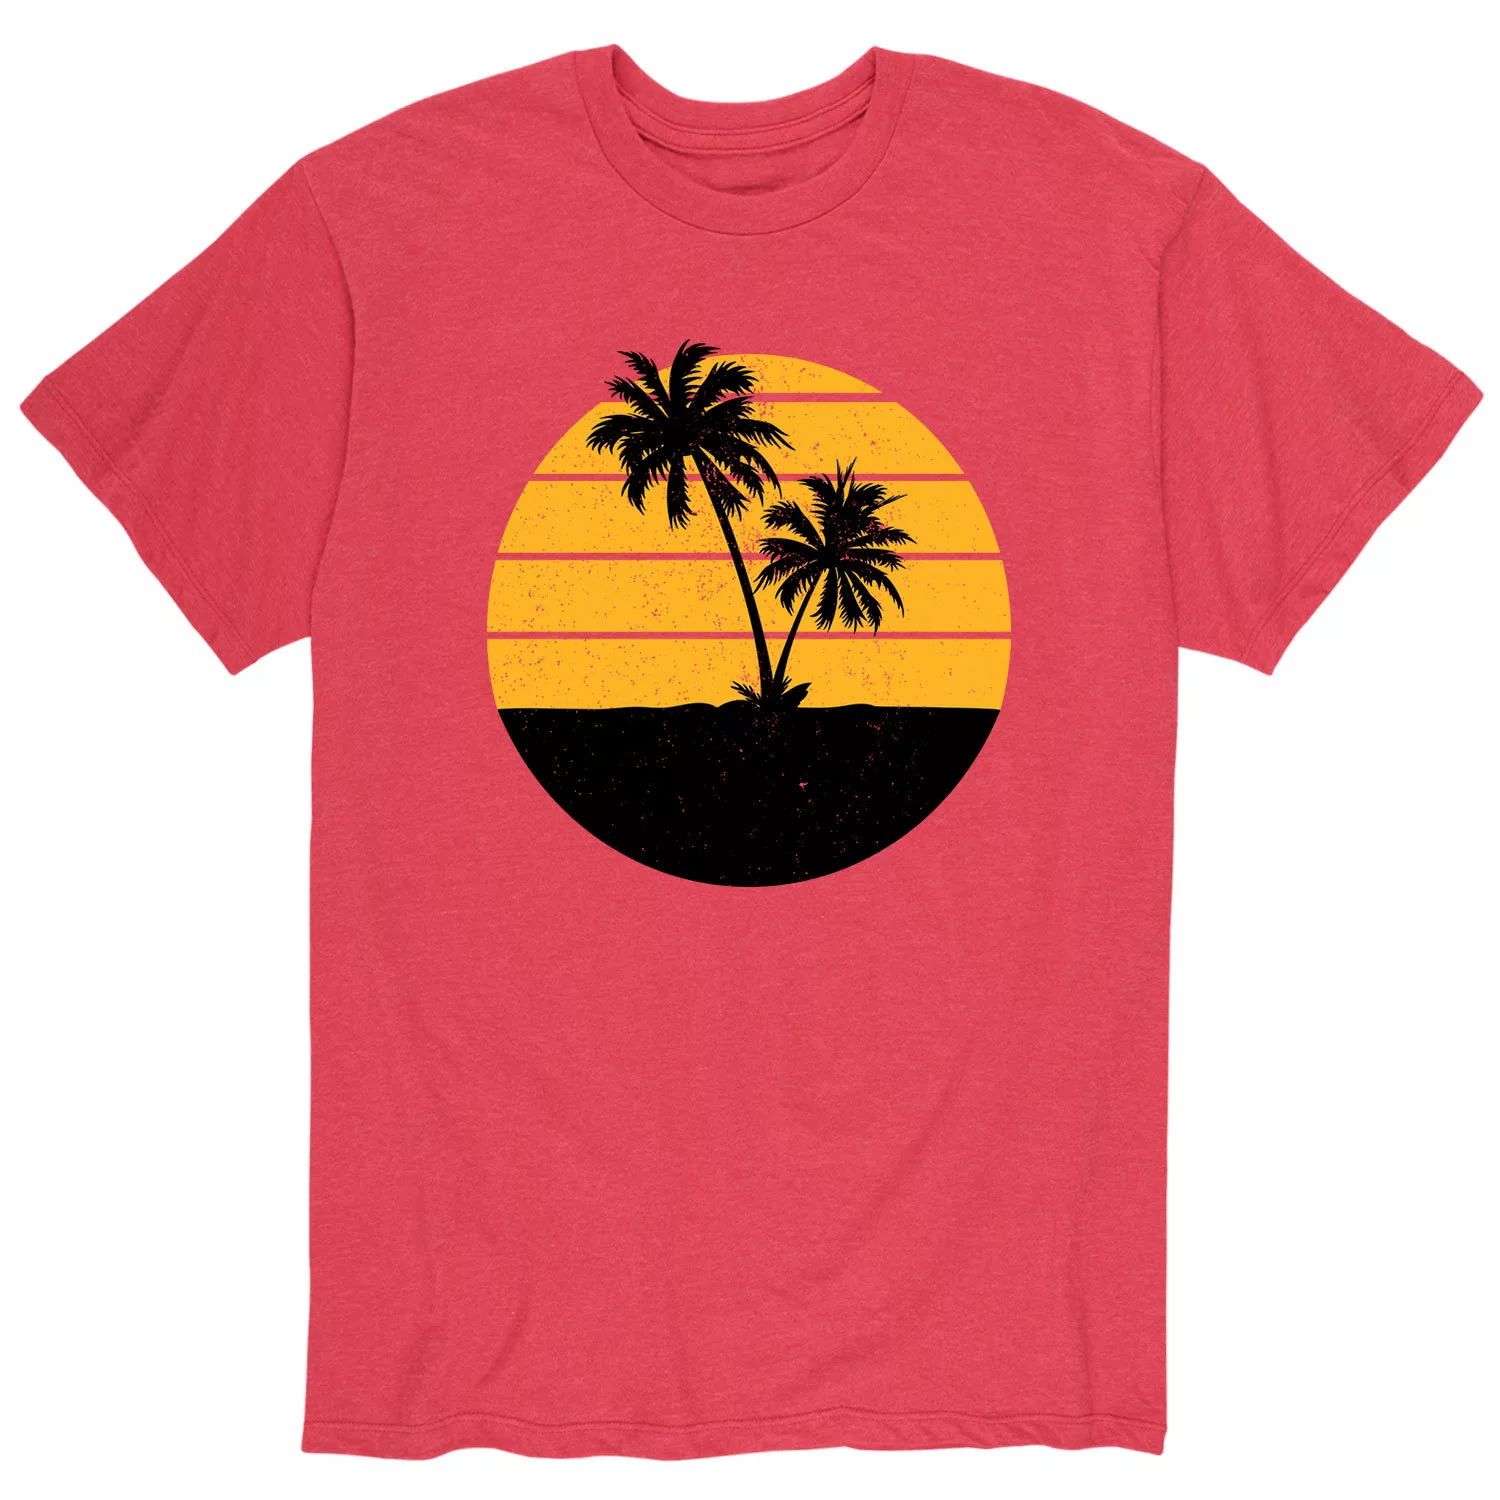 Мужская футболка с силуэтом пальмы Licensed Character